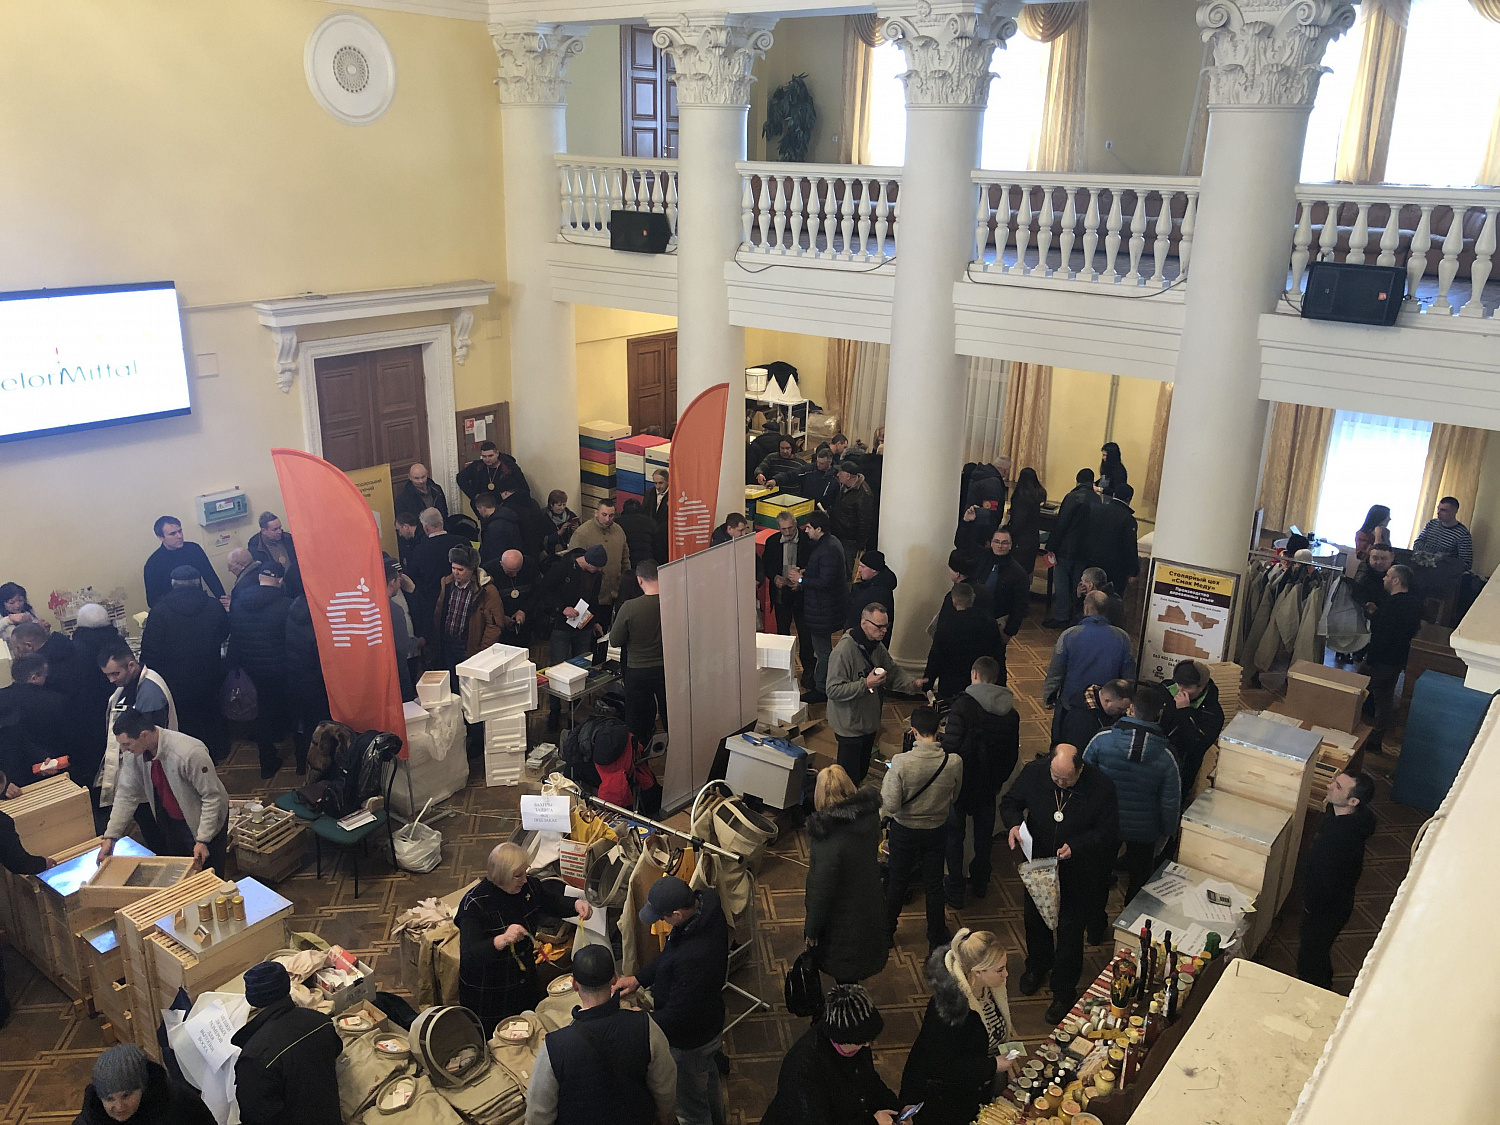 Ежегодная выставка-конференция UKRAINE APICULTURE EXPO 2020